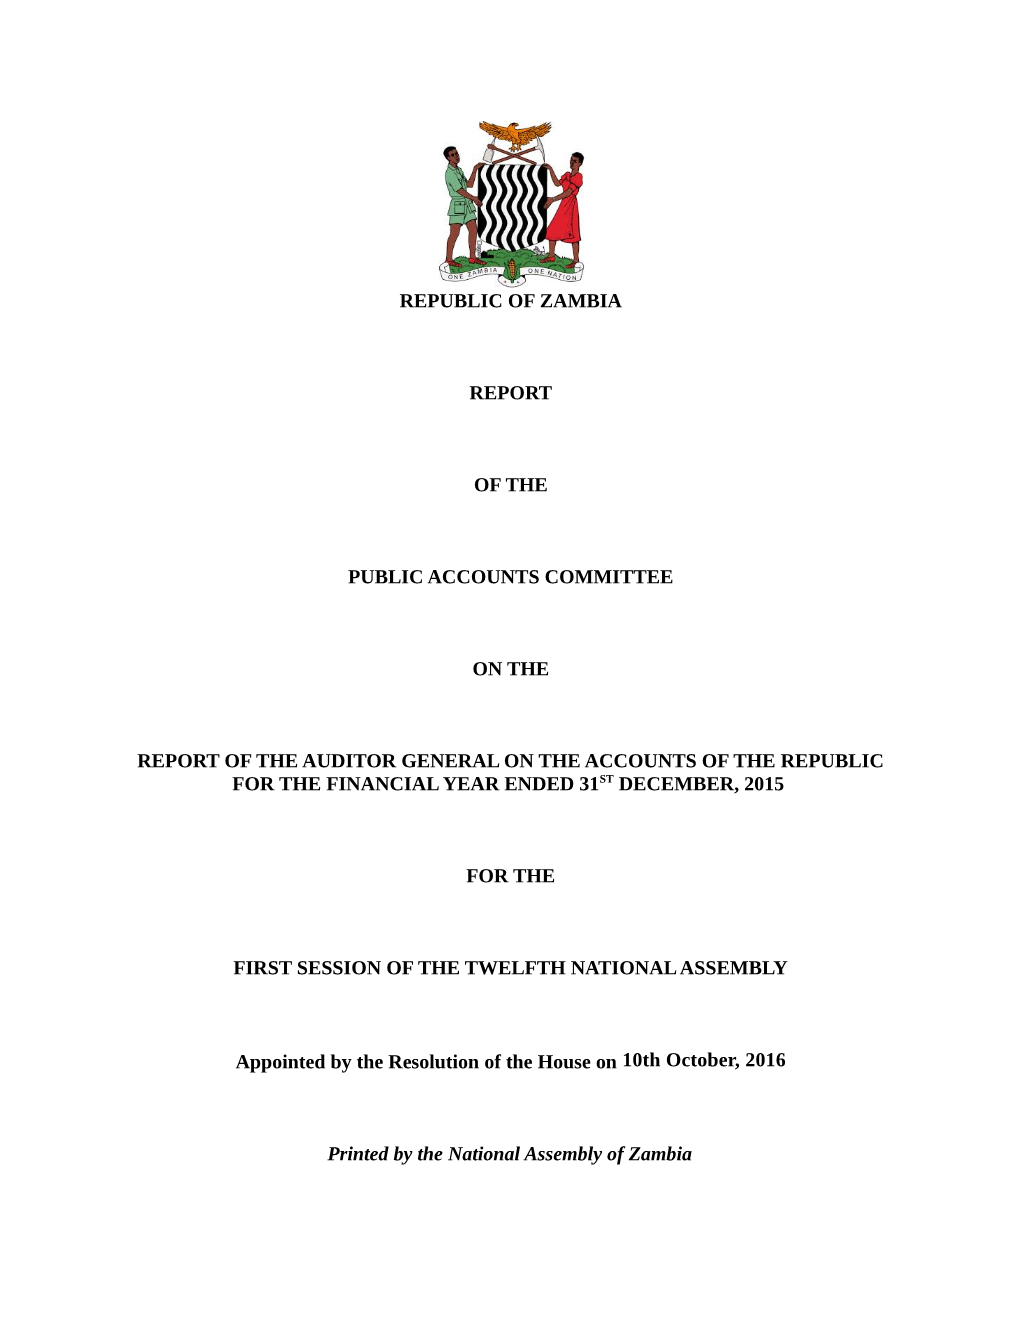 Republic of Zambia Report of the Public Accounts